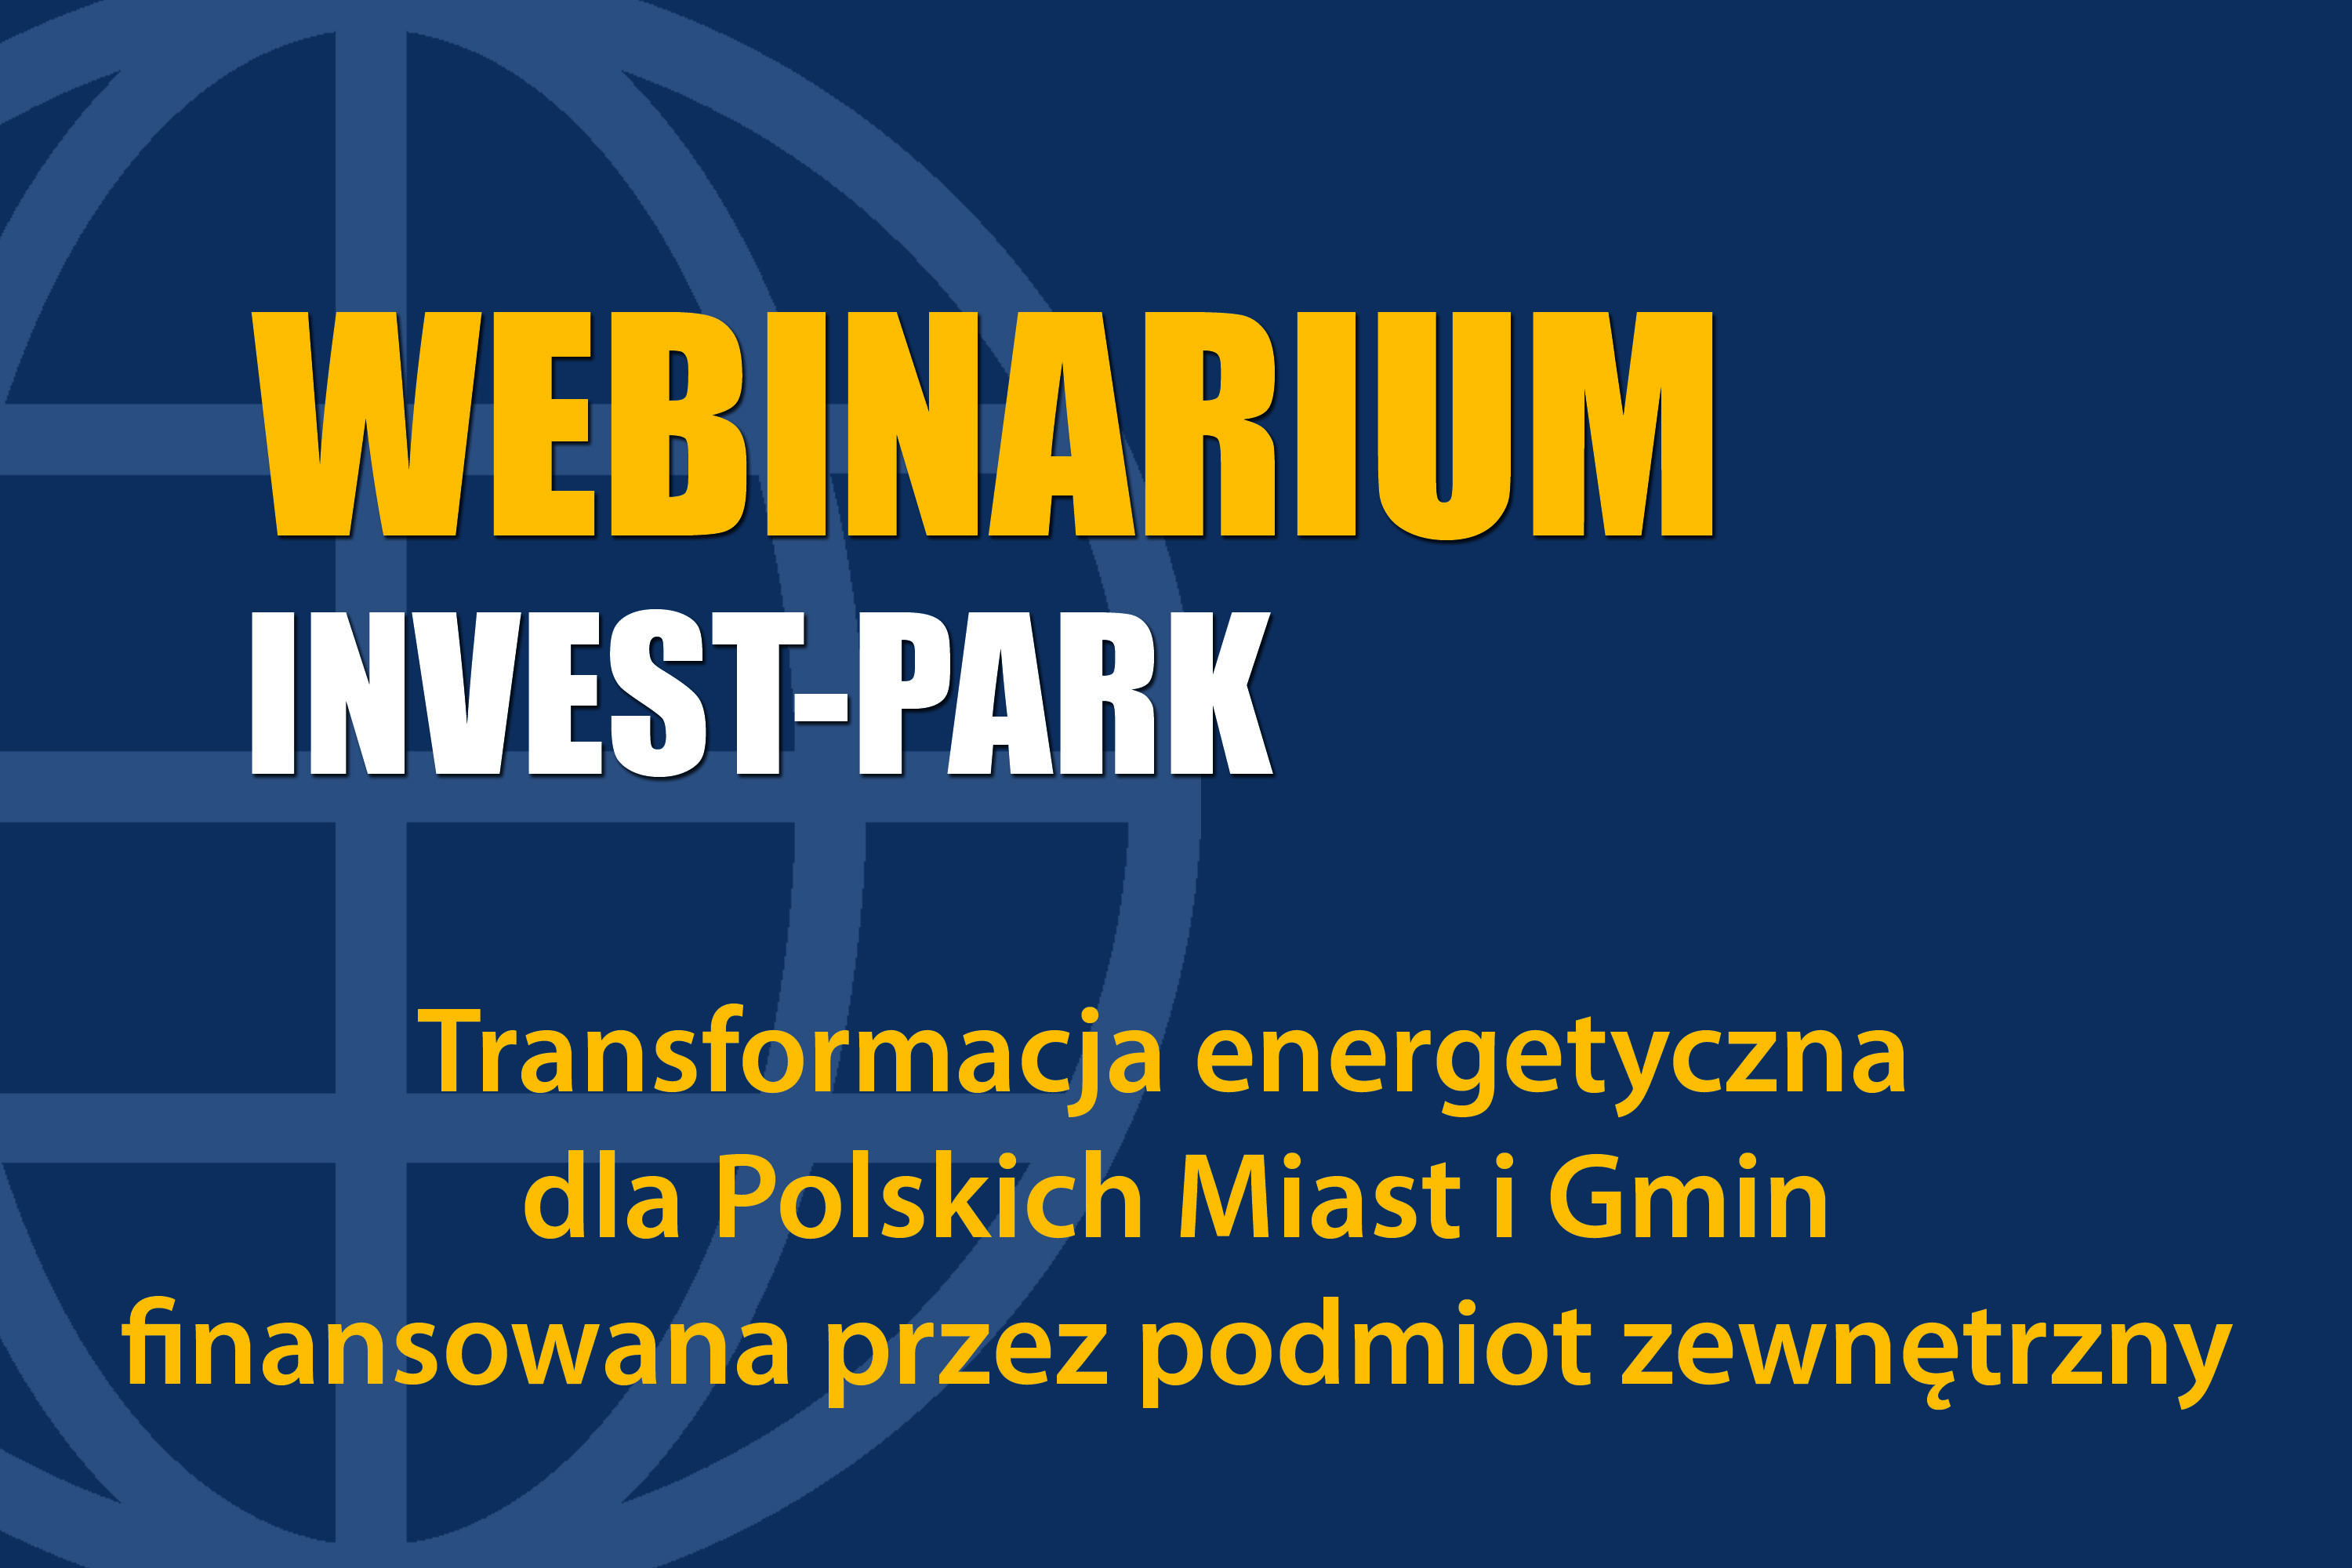 Transformacja energetyczna dla Polskich Miast i Gmin finansowana przez podmiot zewnętrzny